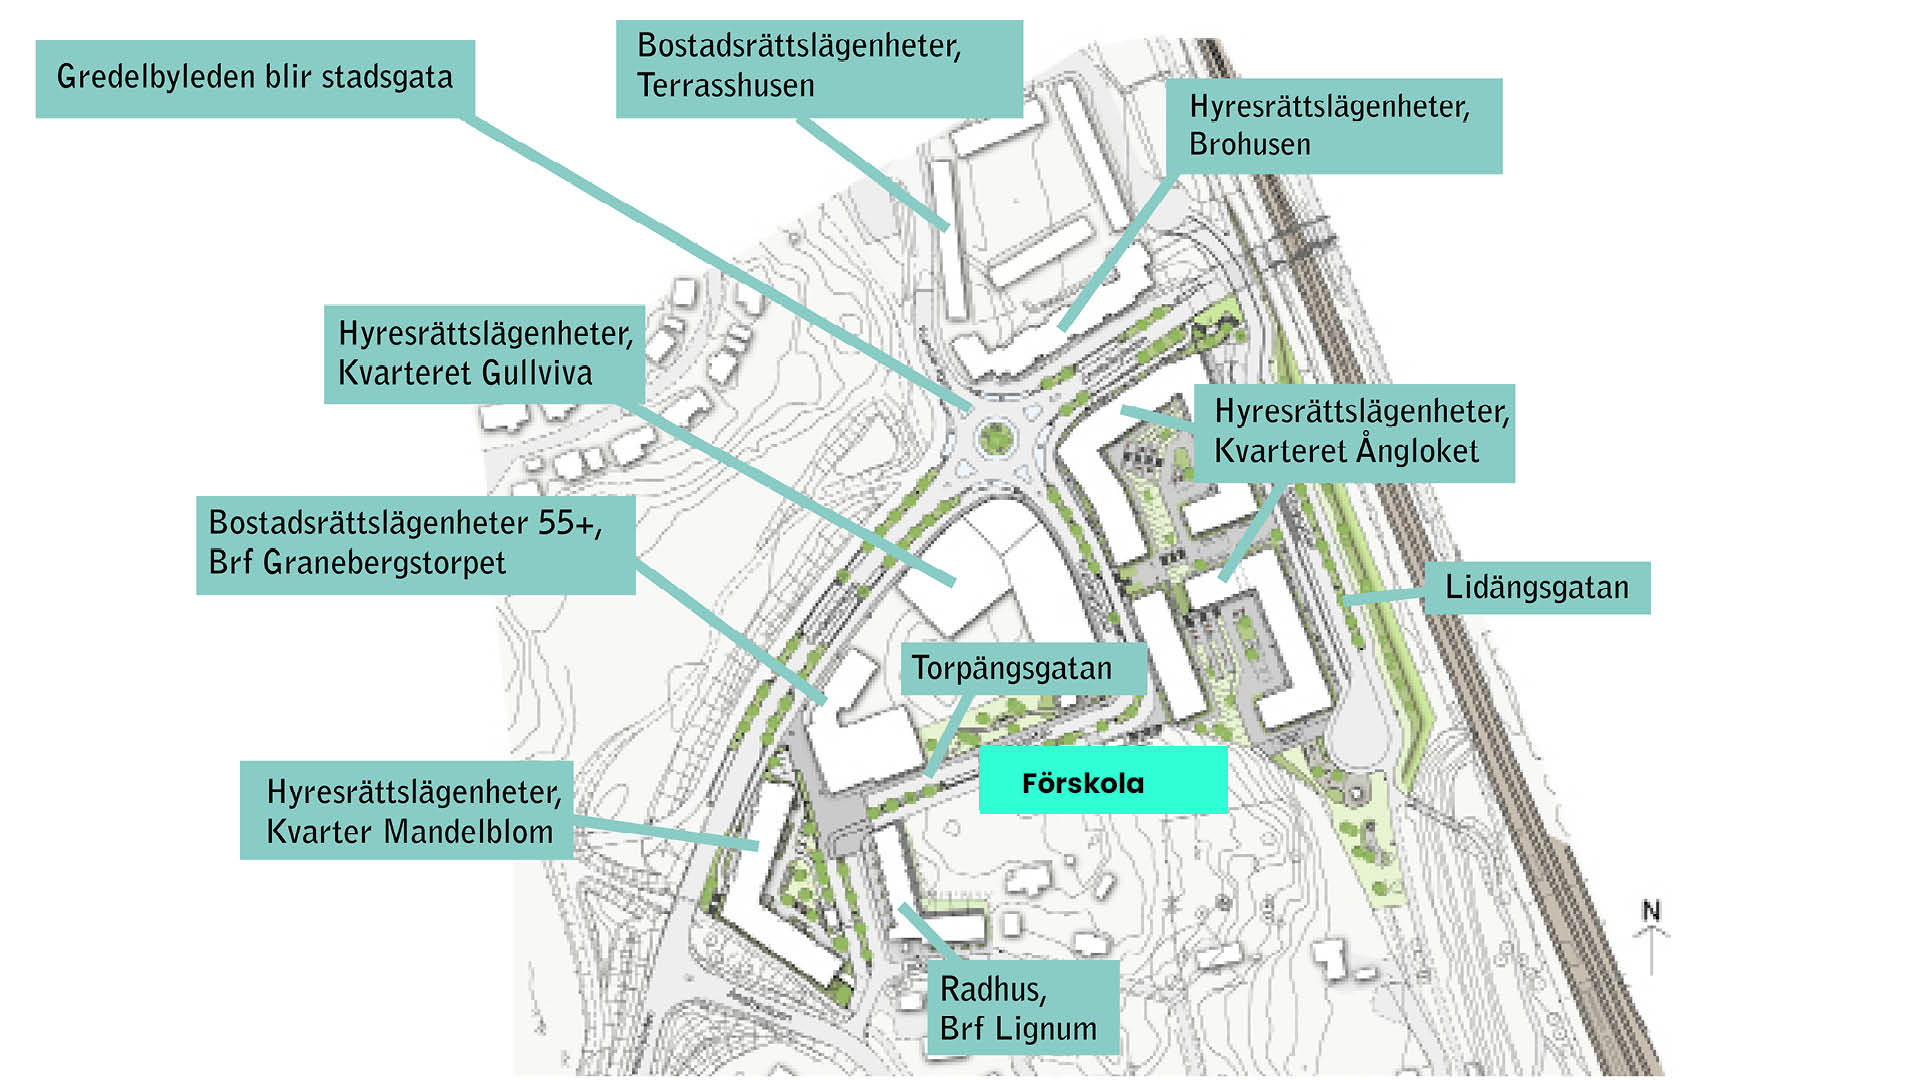 Illustrationskarta över centrala Ängby